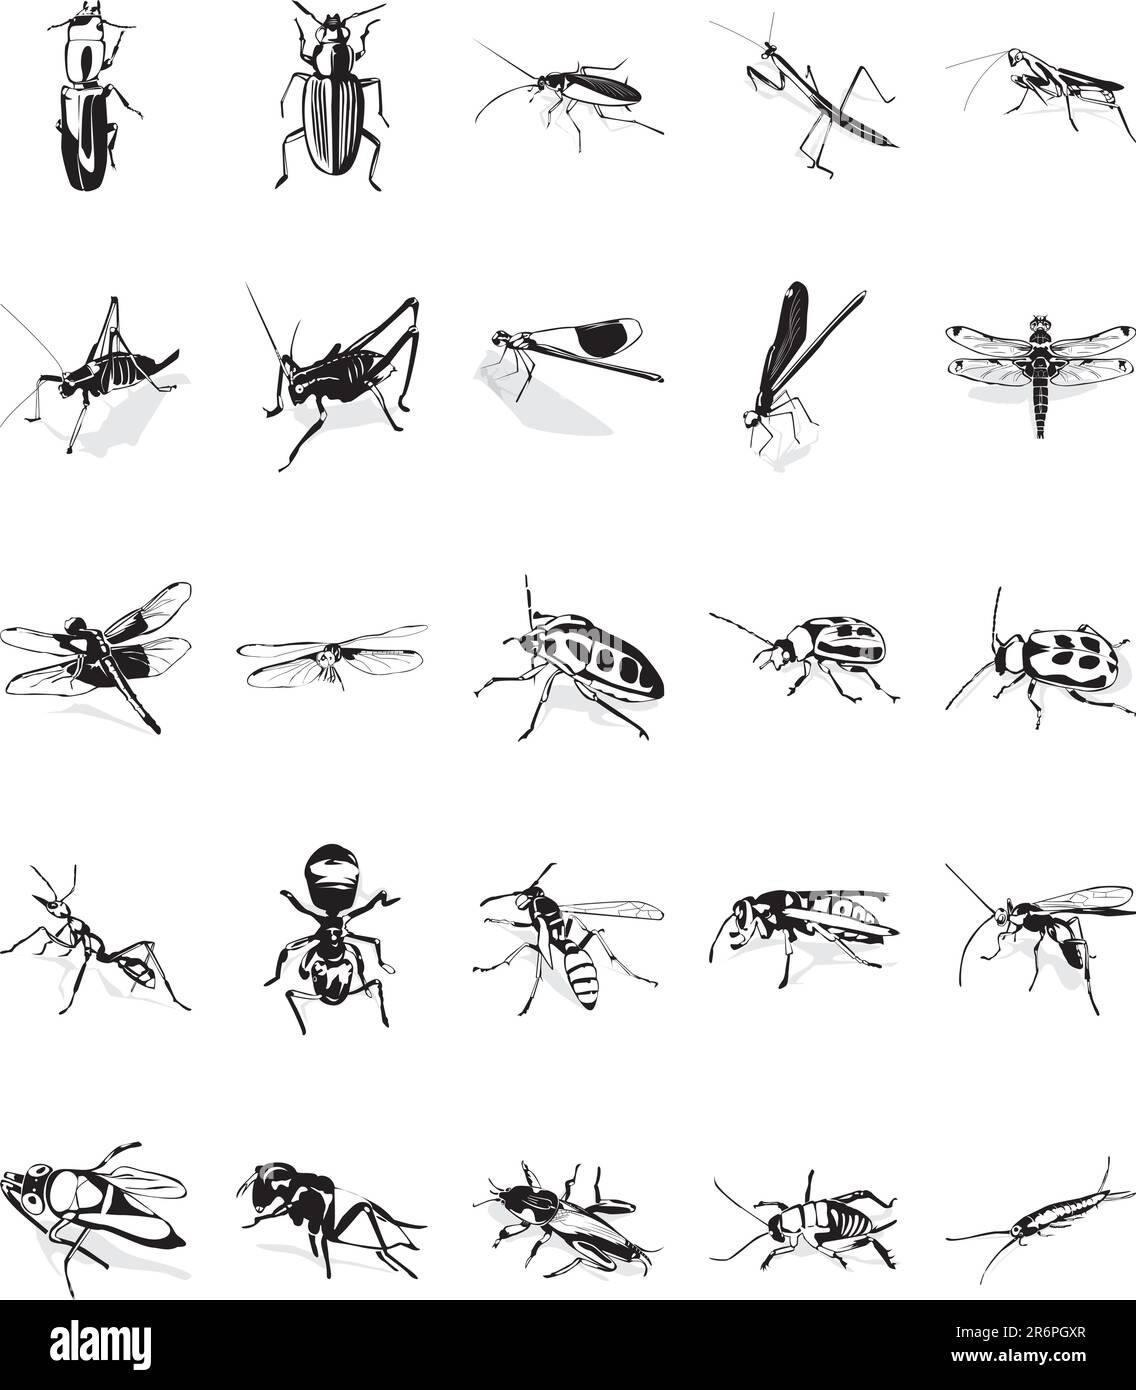 Illustrazione di venti clipart vettoriali uniformi di vari insetti Illustrazione Vettoriale